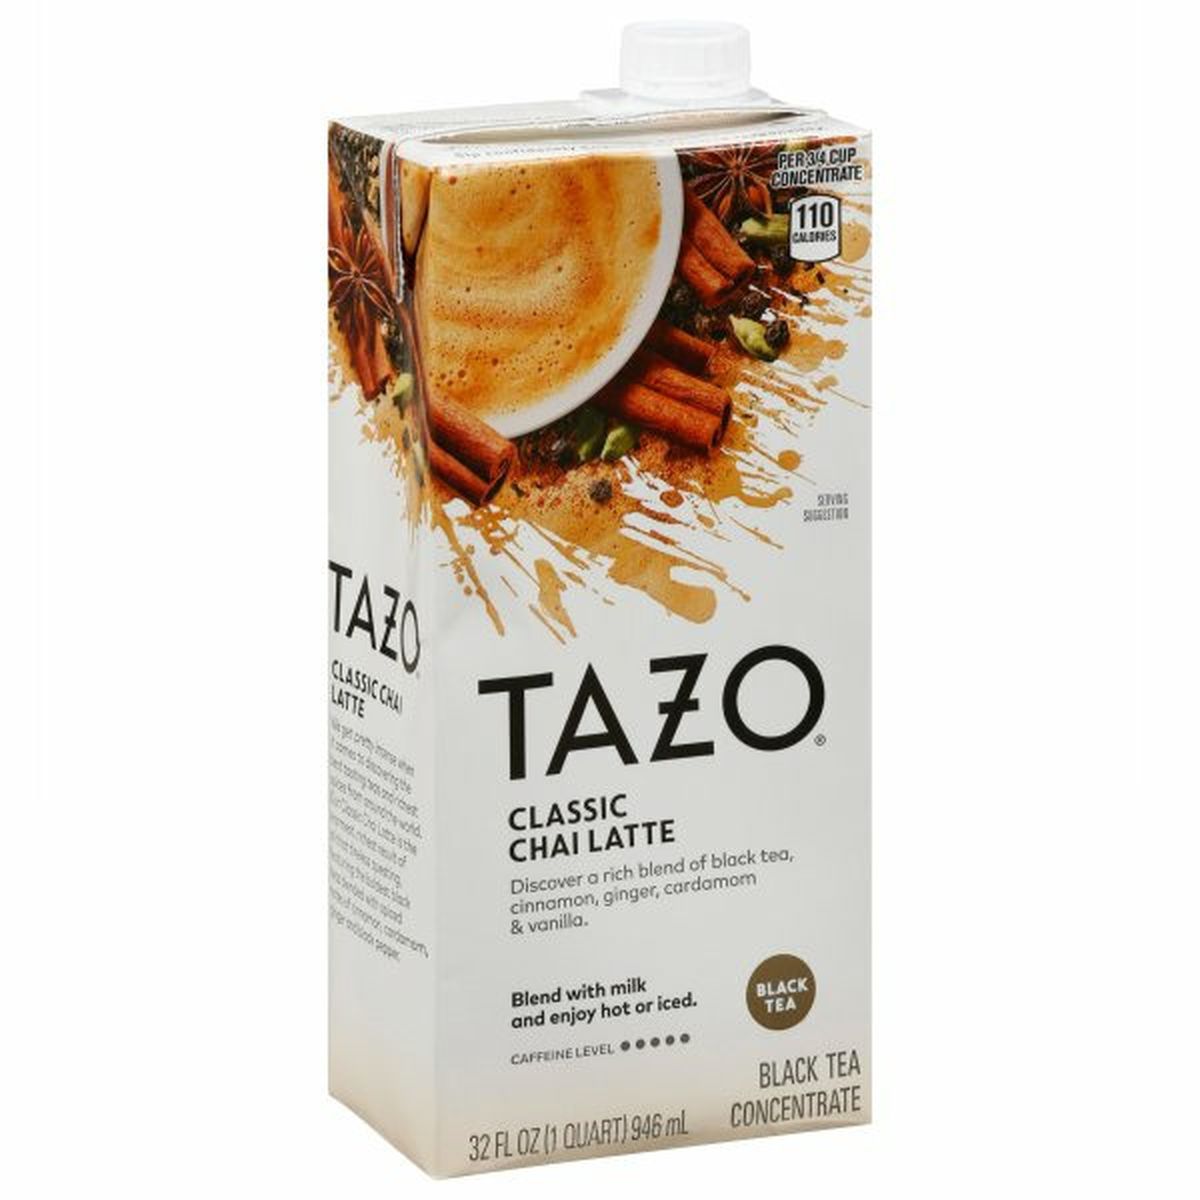 Calories in Tazo Tea Black Tea Concentrate, Classic Chai Latte